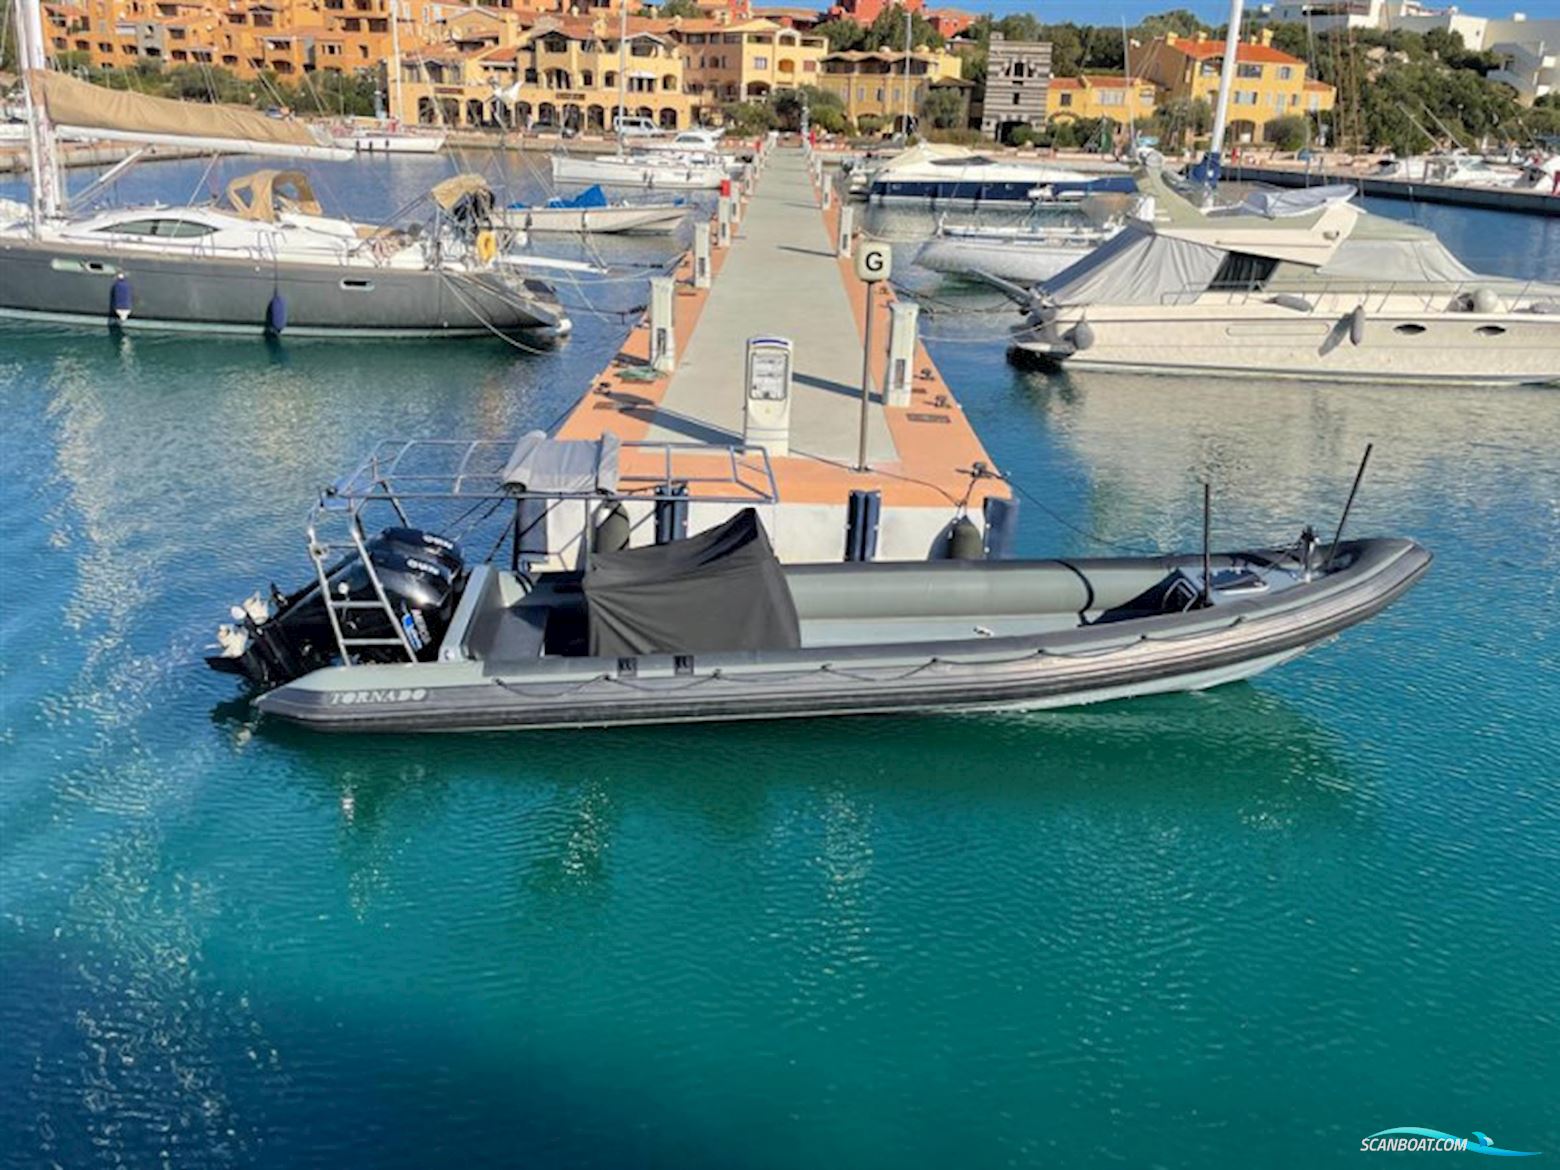 Tornado 9.5 Motorbåt 2019, Italien